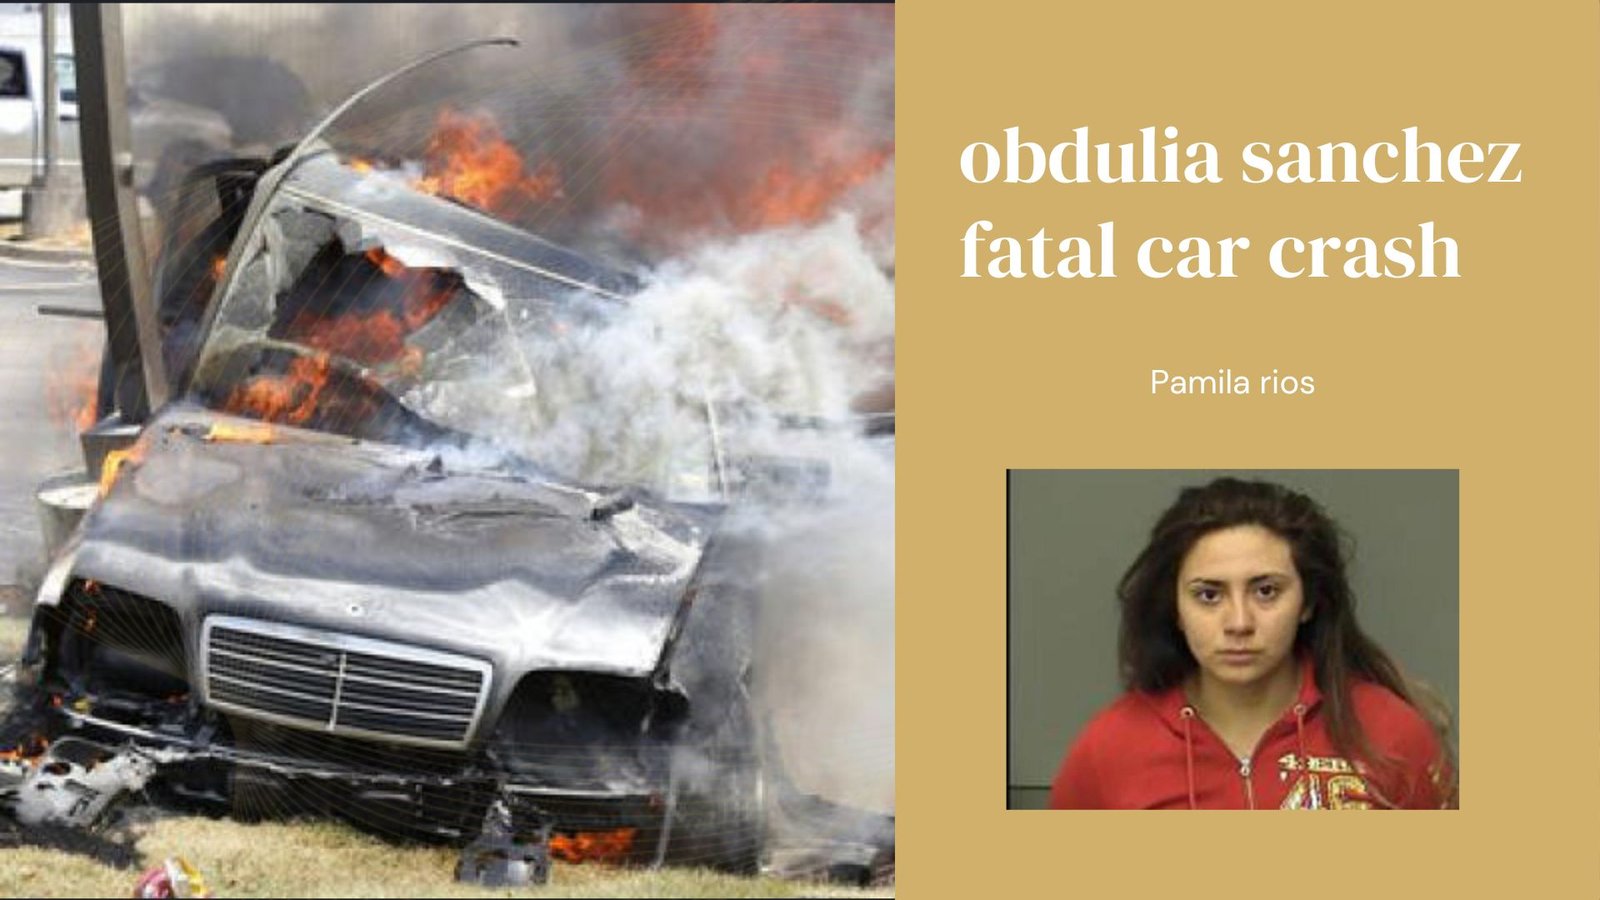 obdulia sanchez fatal car crash